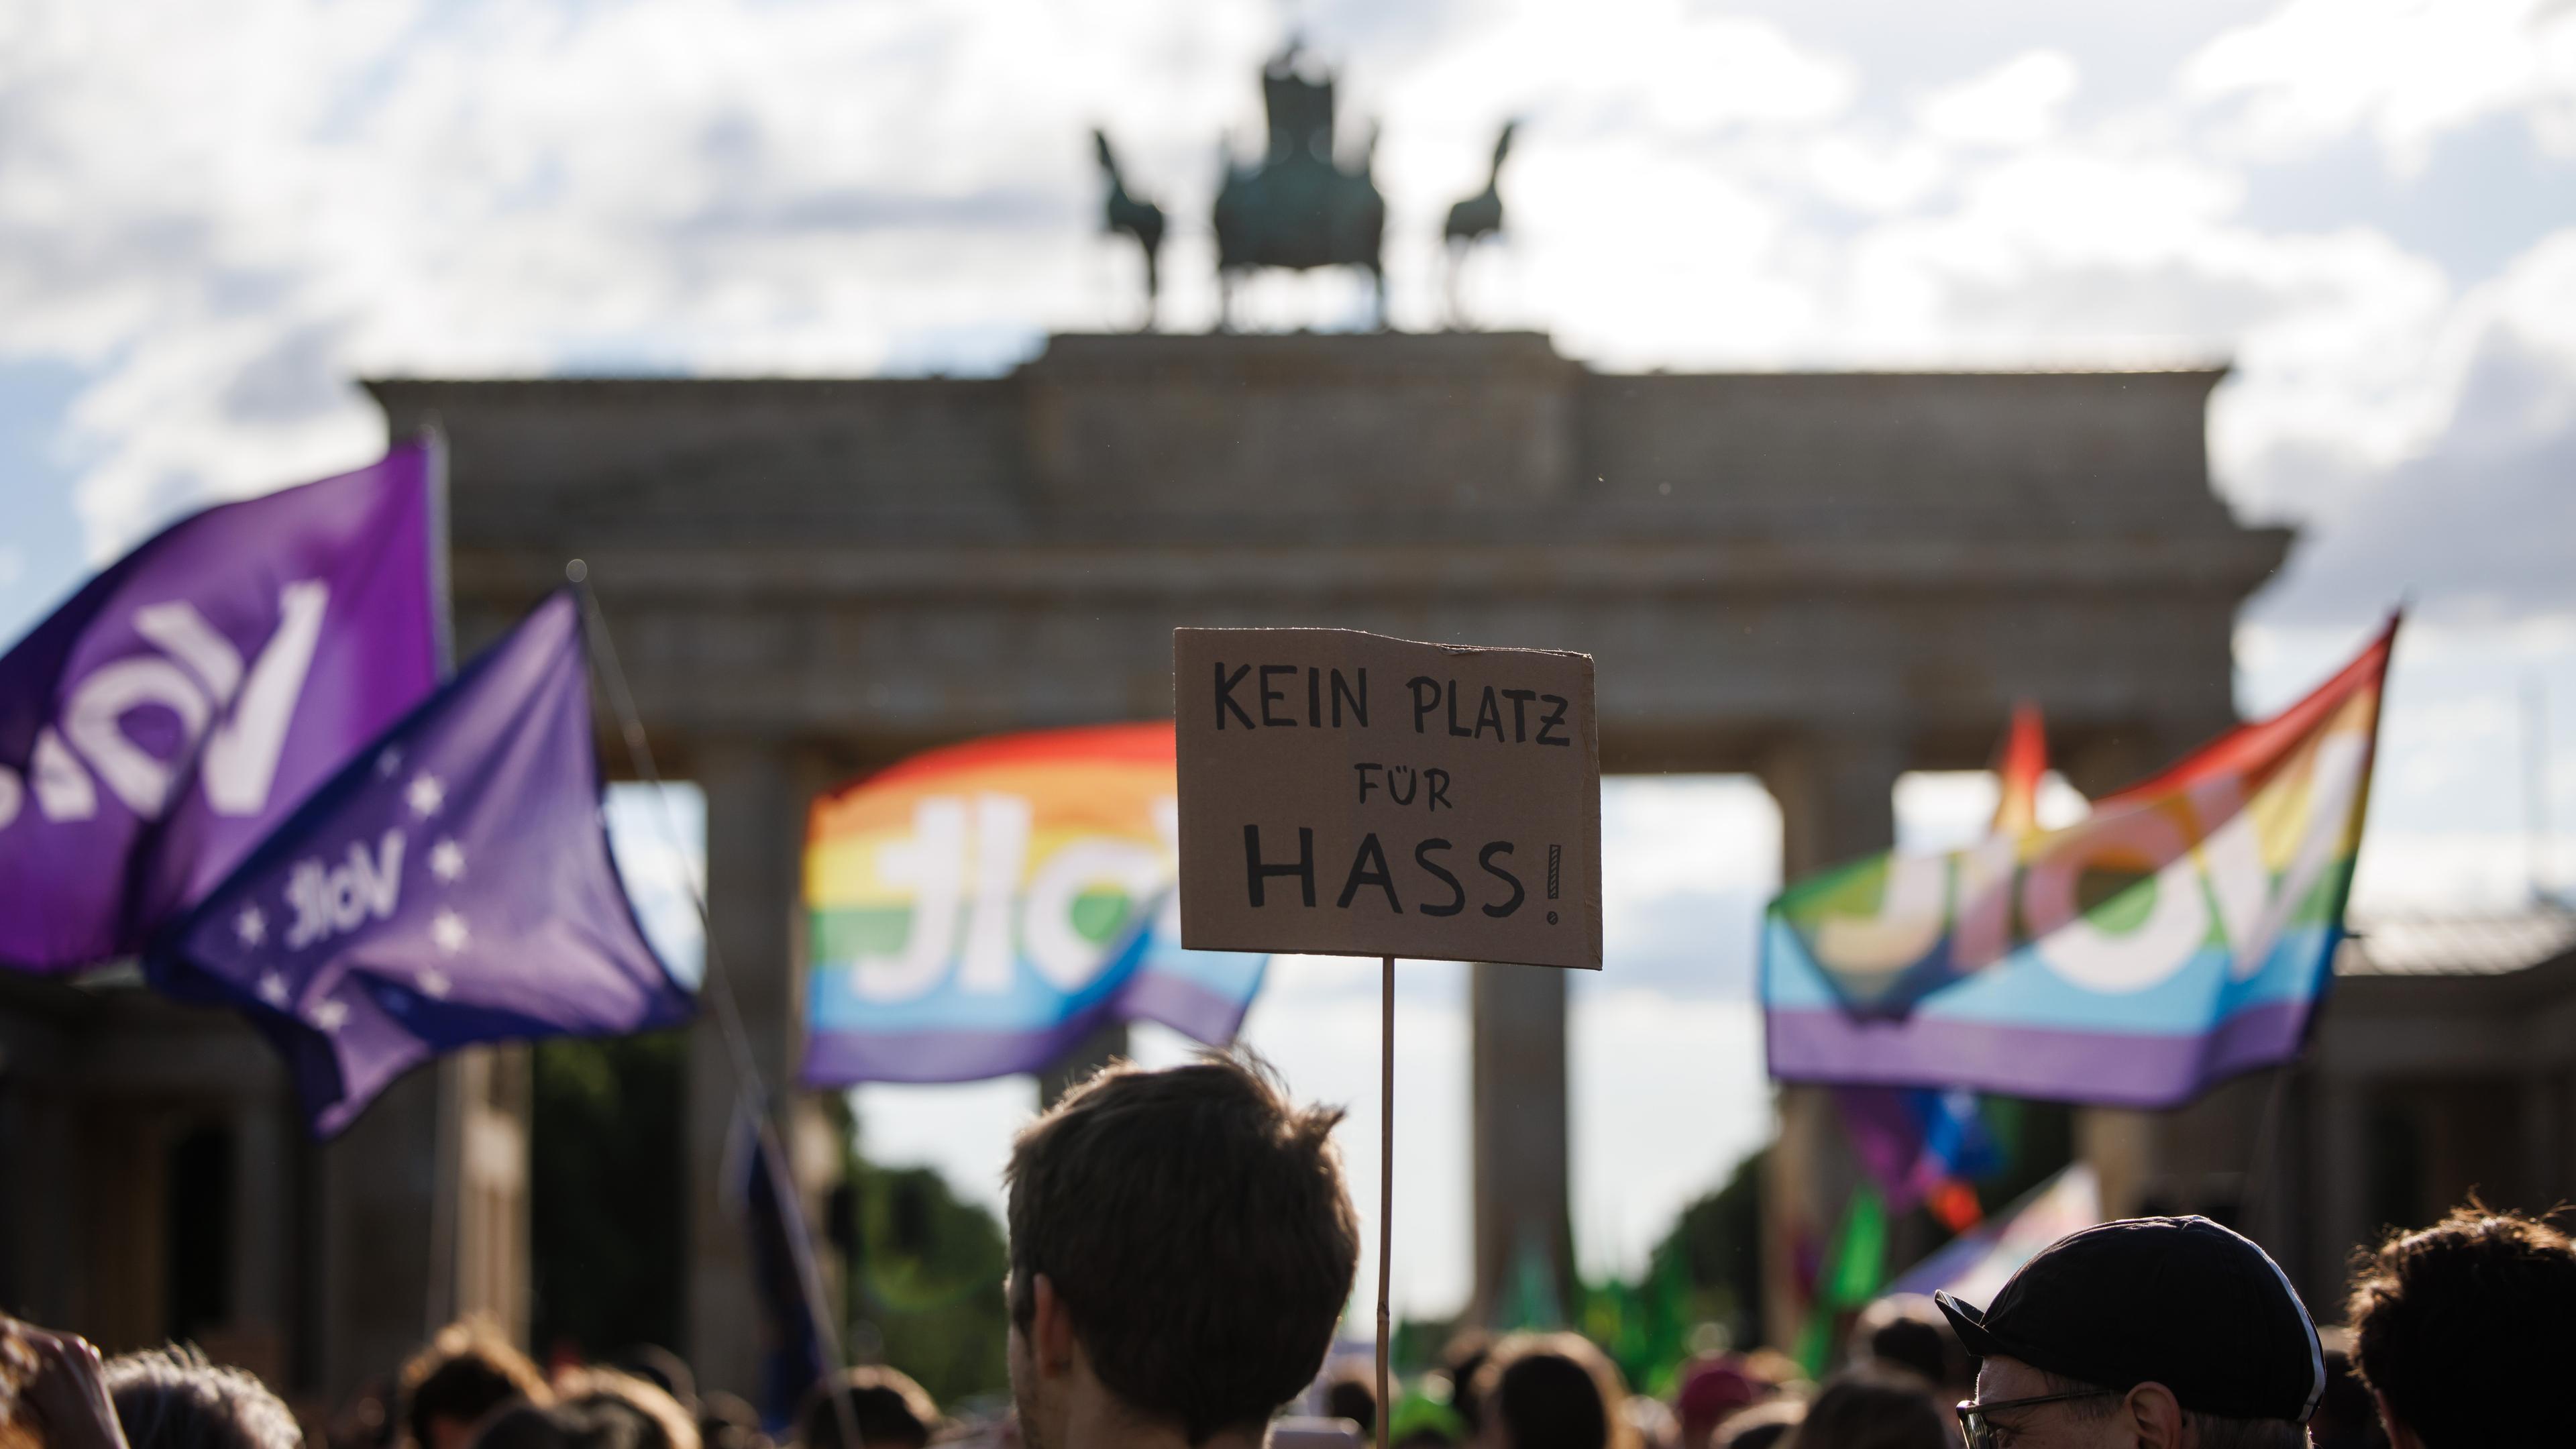 Kundgebung vor dem Brandenburger Tor